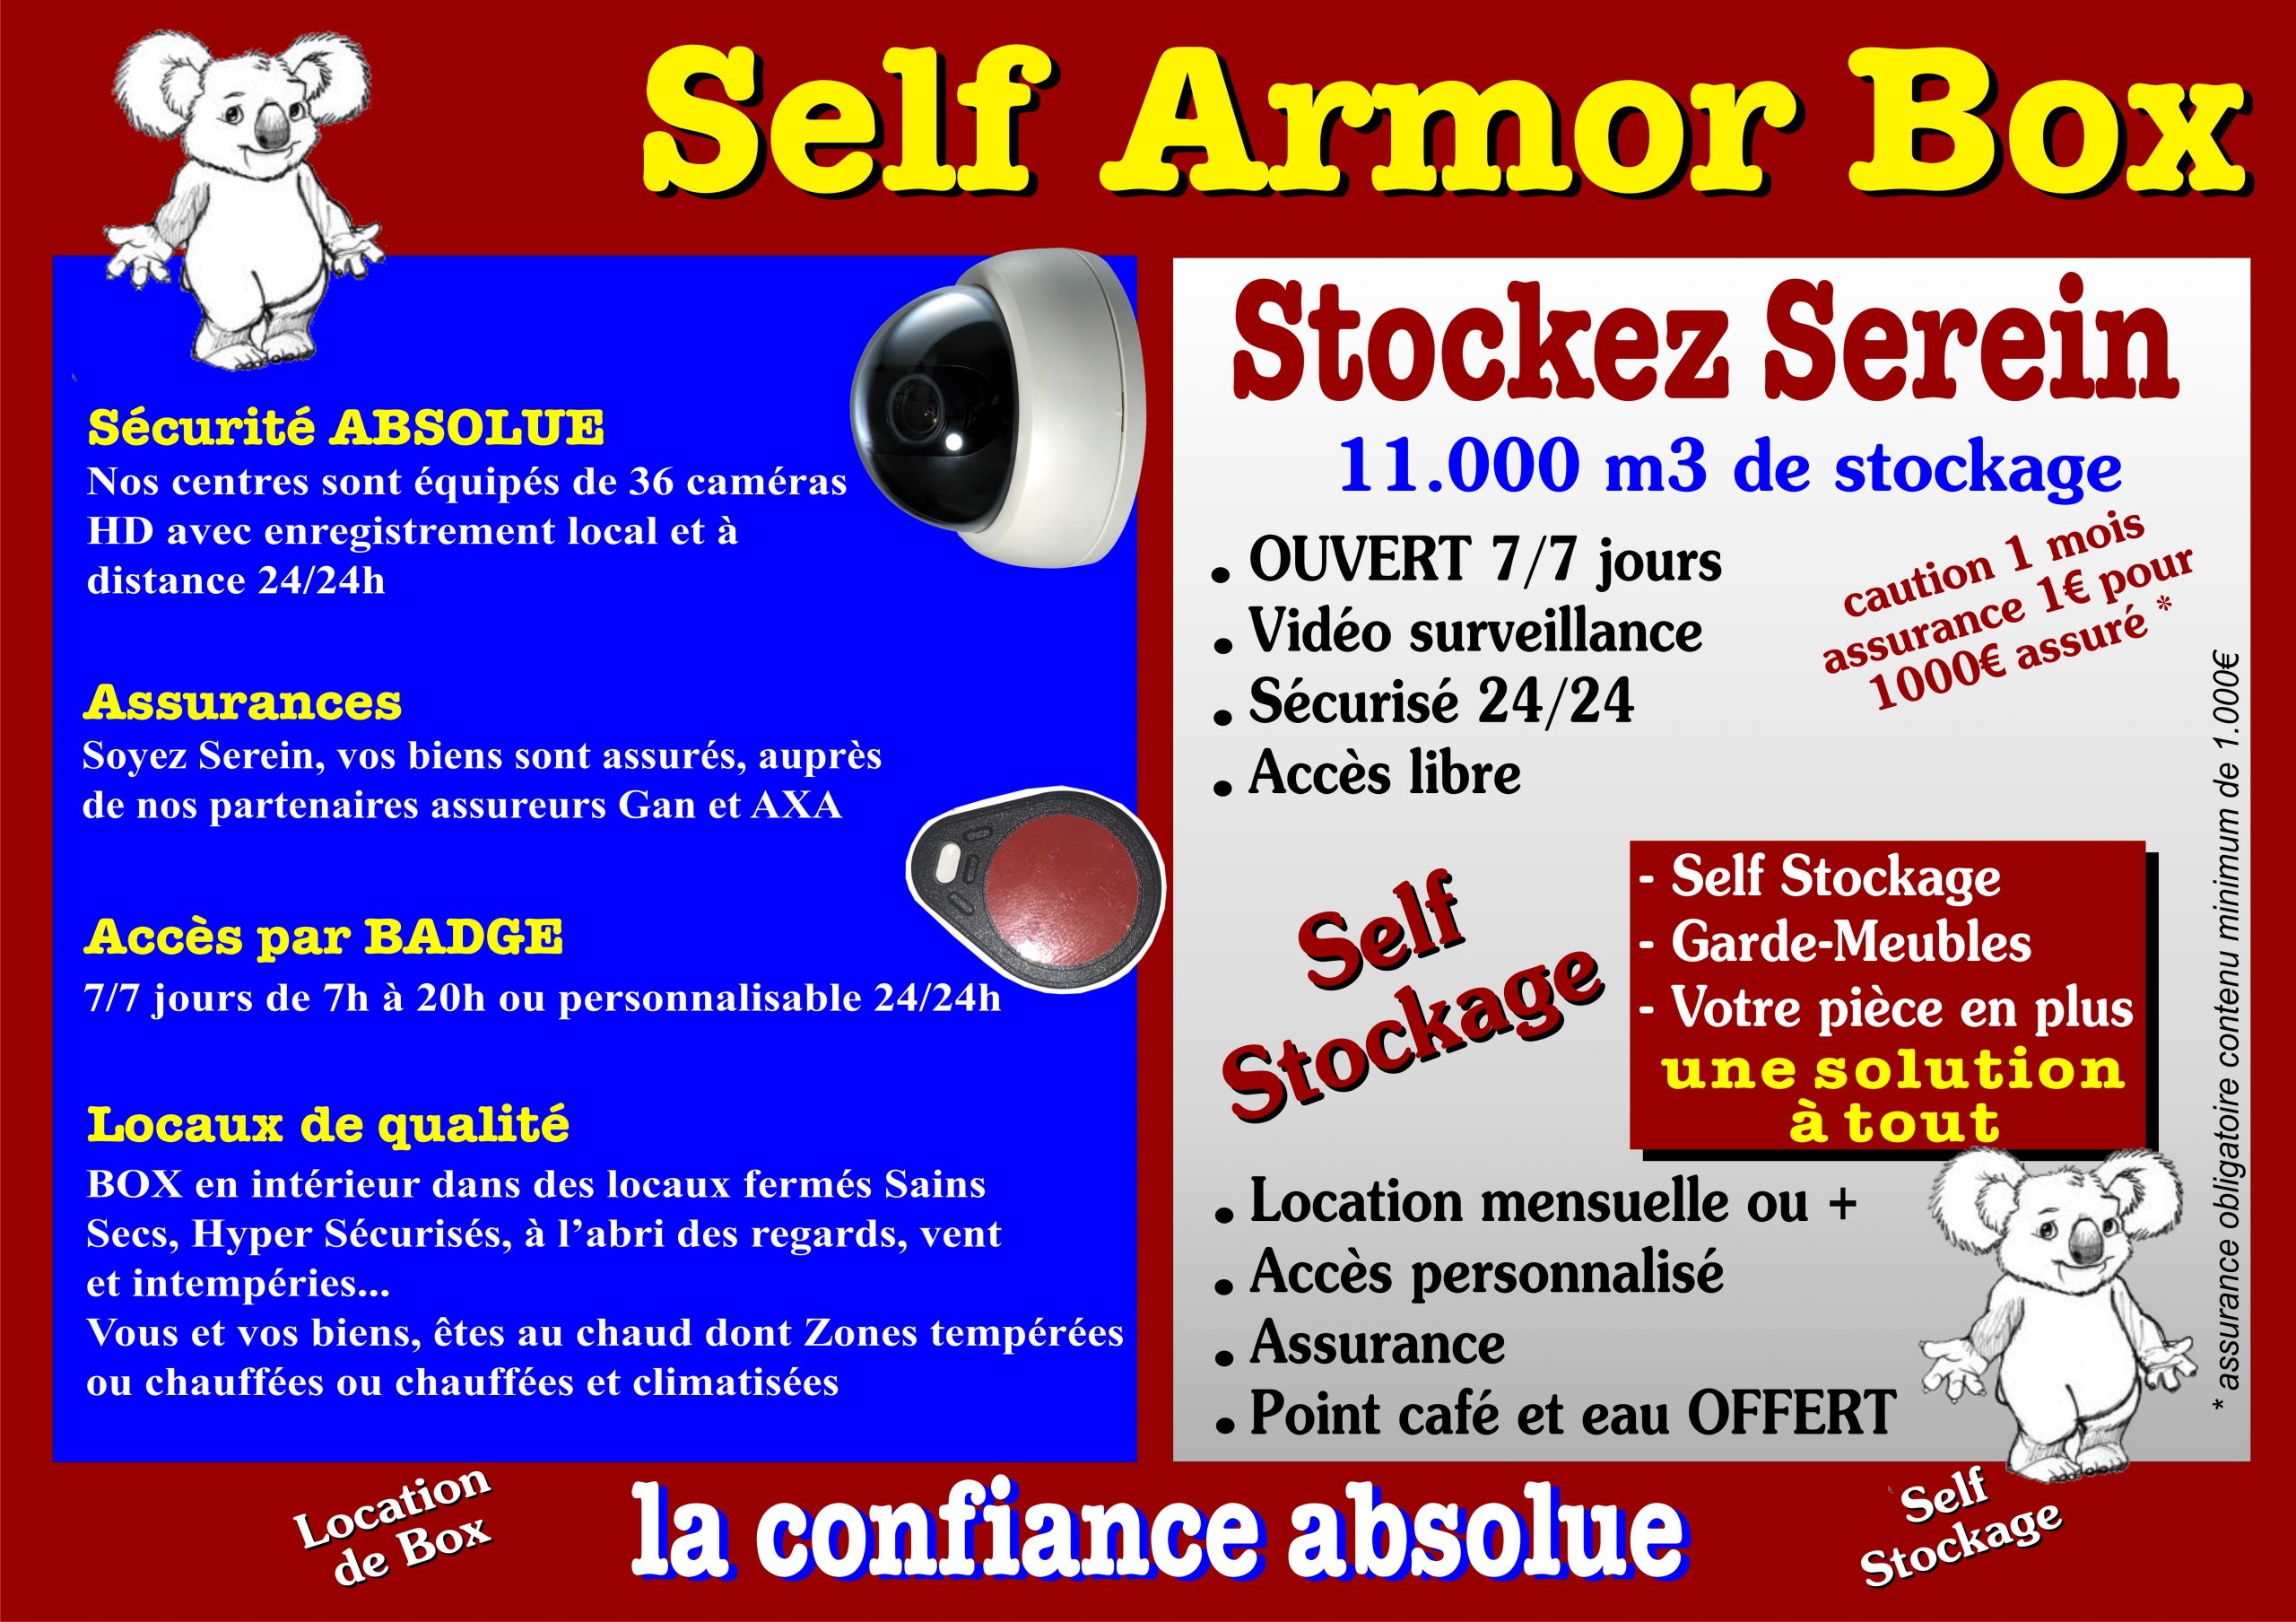 À propos de Self Armor Box